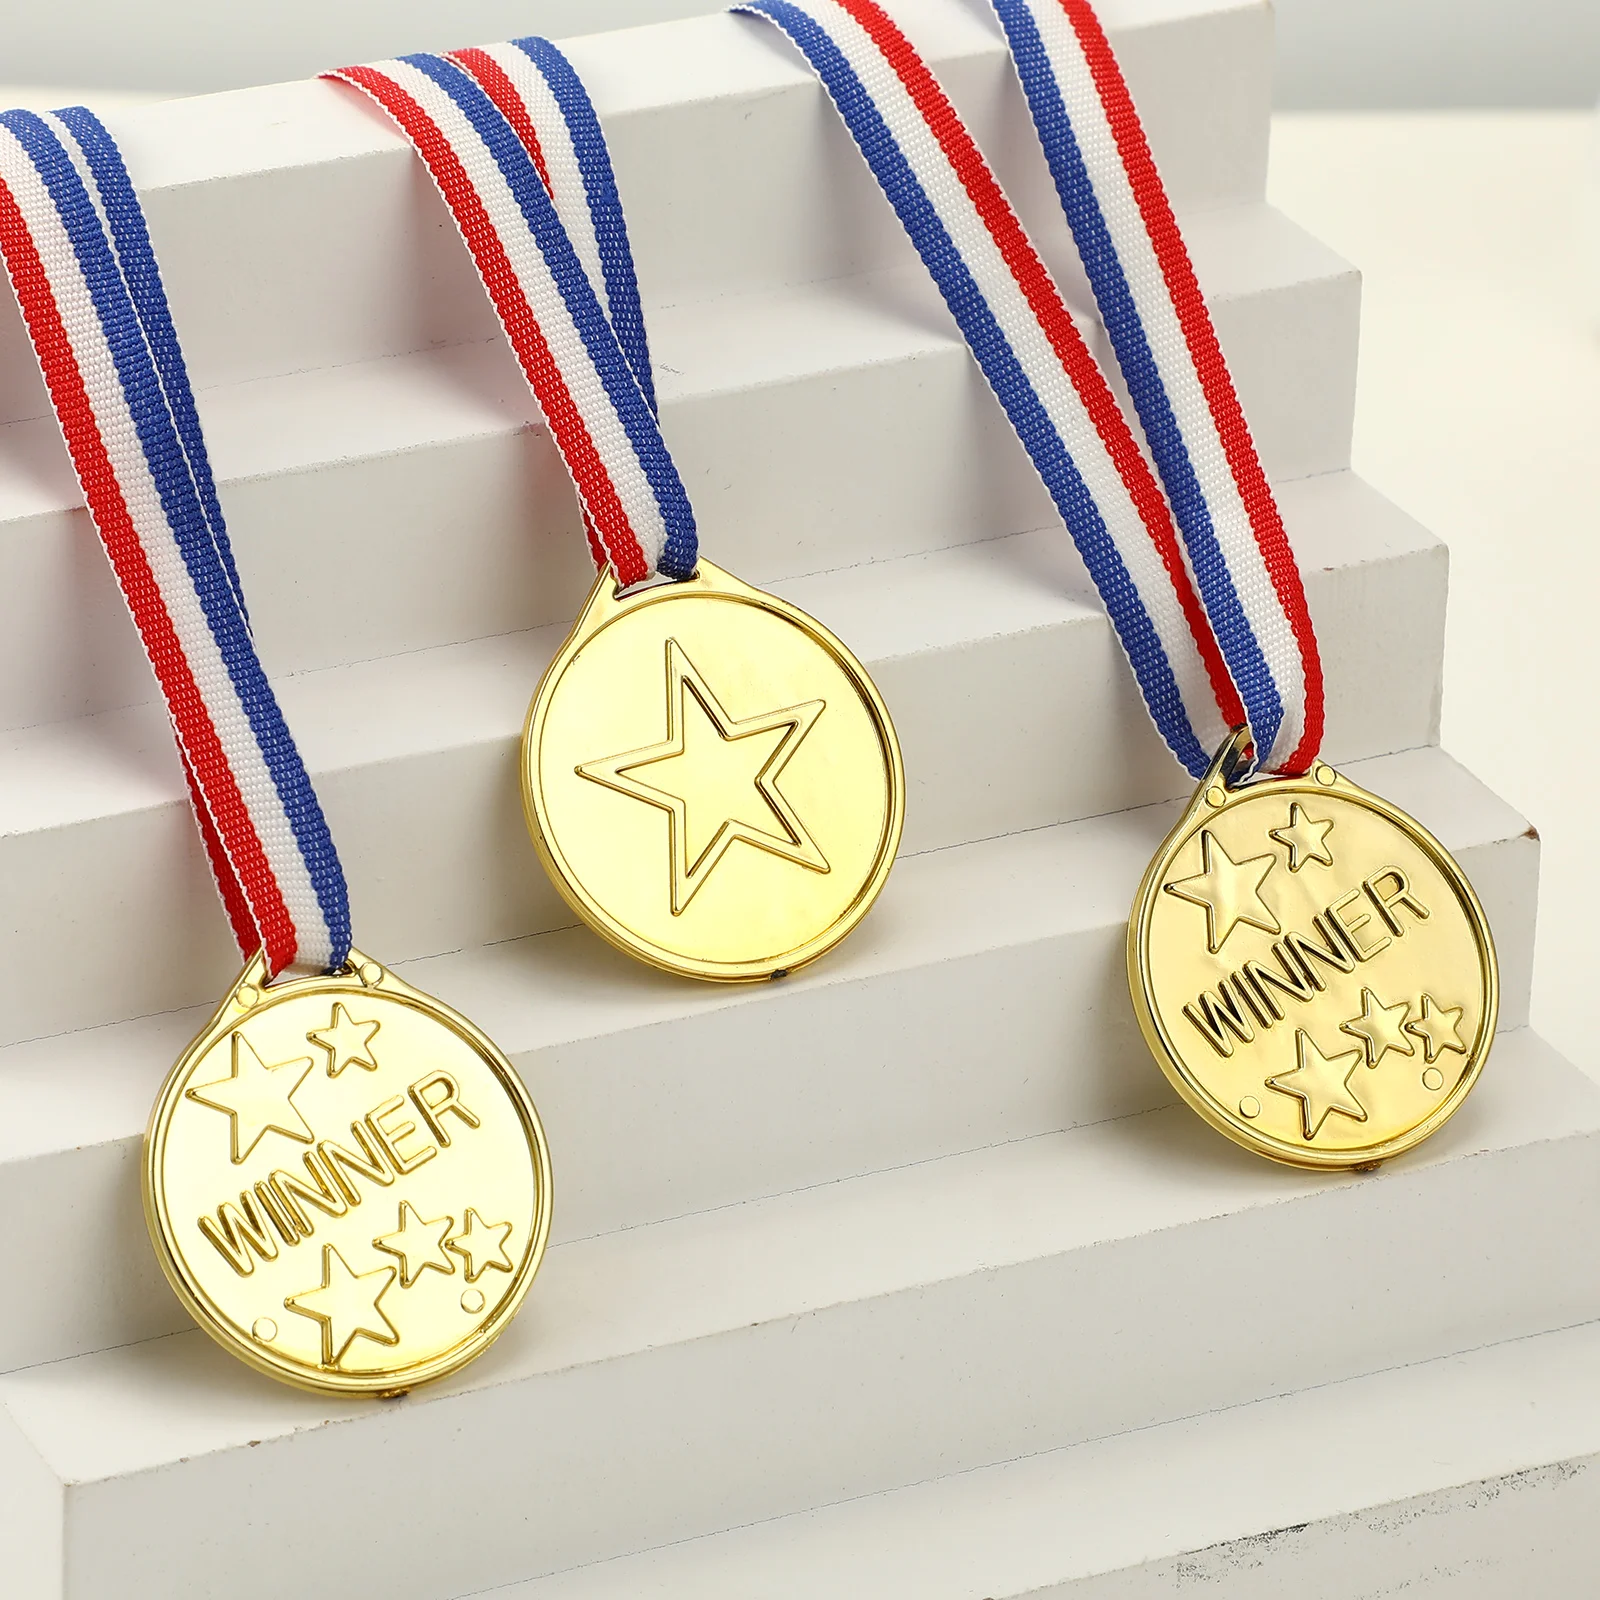 50 piezas de Fútbol de los Juguetes de los Niños de la Medalla el Día de los Deportes de Medallas a los Niños de Oro de Fútbol de Gimnasia Premios de Plástico Premio de Recompensas de Estudiante . ' - ' . 4